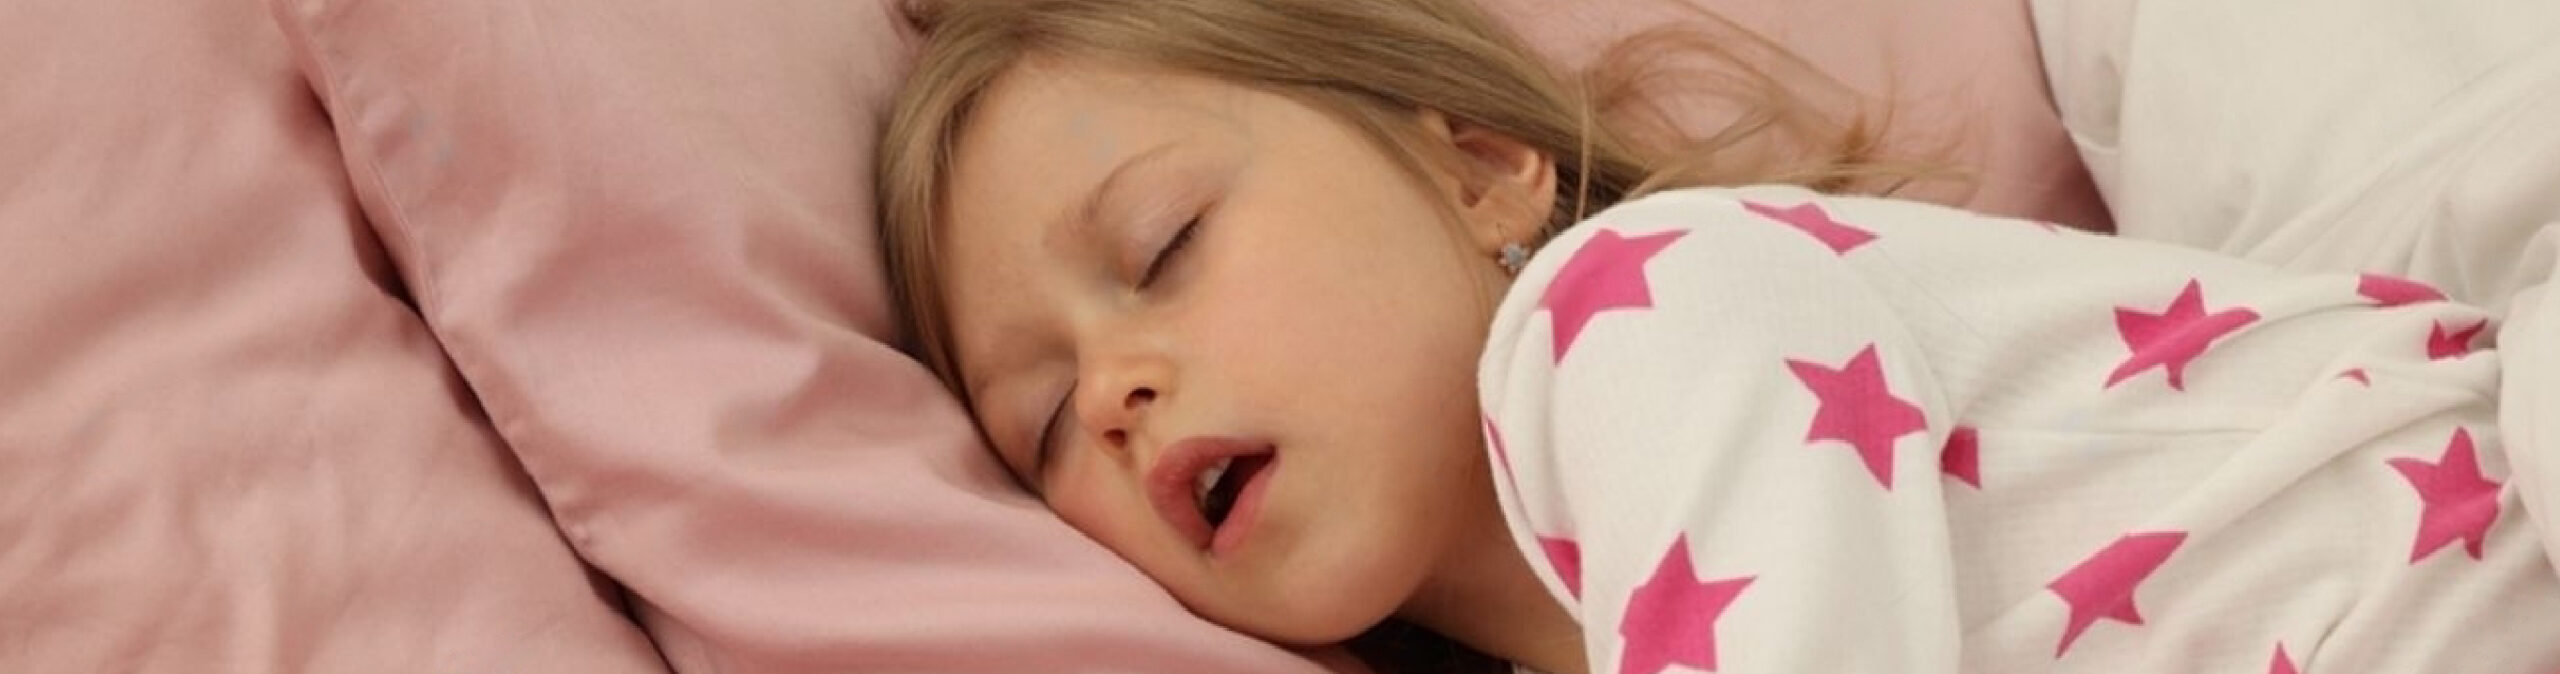 Ortodoncia y apnea del sueño obstructiva en niños.